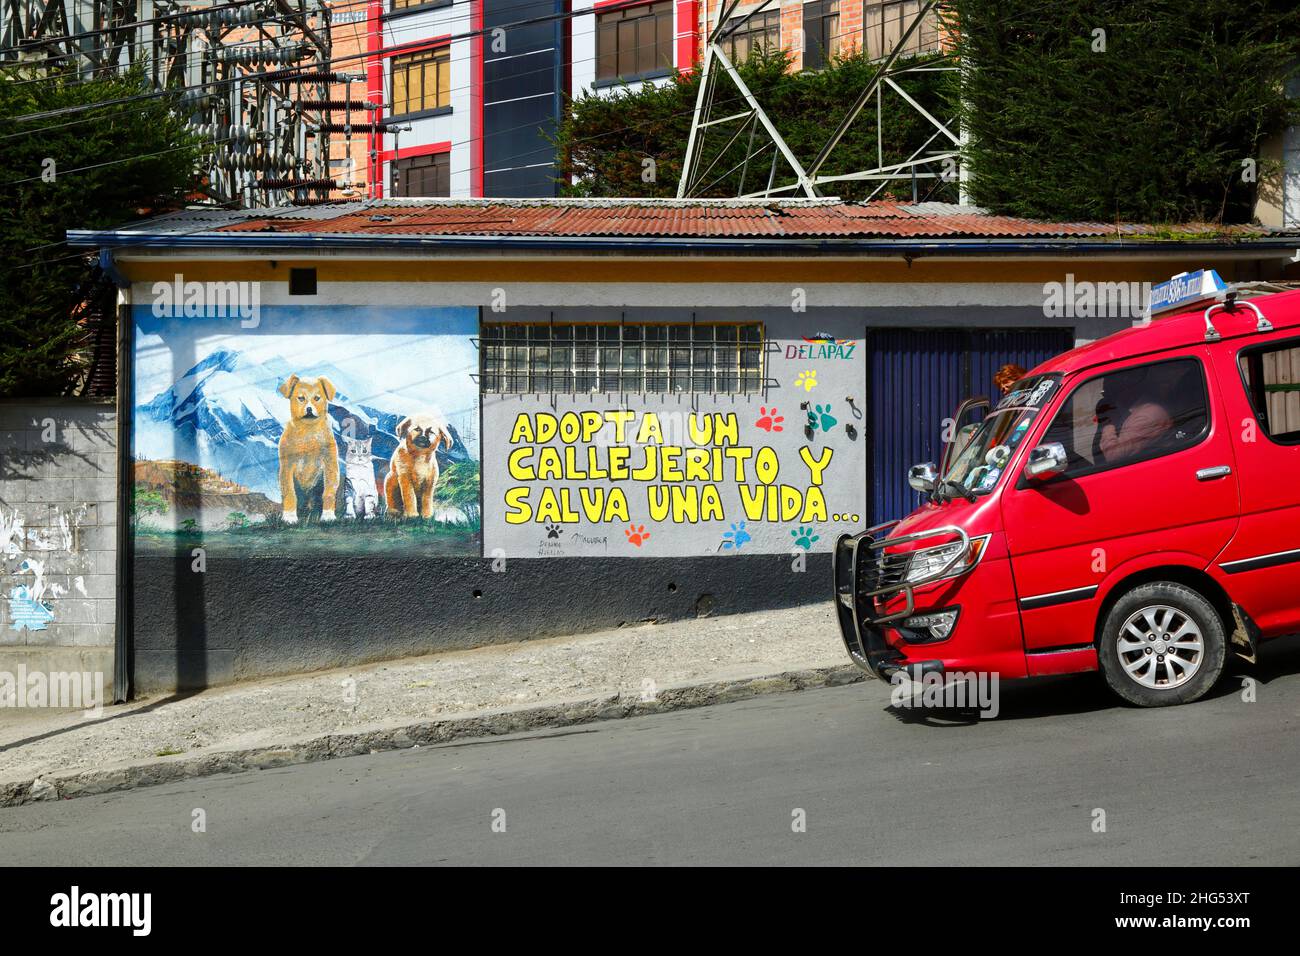 Roter Minibus, der an der Fassade des Gebäudes im Stadtteil Tembladerani vorbeifährt und die Menschen ermutigt, streunende Tiere als Haustiere anzunehmen, anstatt neue zu kaufen. Wie viele Städte in Lateinamerika haben auch La Paz und das benachbarte El Alto eine große Population von Straßenhunden, von denen viele verlassene Haustiere sind und eine Gefahr für Gesundheit und Sicherheit darstellen können. Der Slogan übersetzt als "Adopt a streunende and rette a life". La Paz, Bolivien Stockfoto